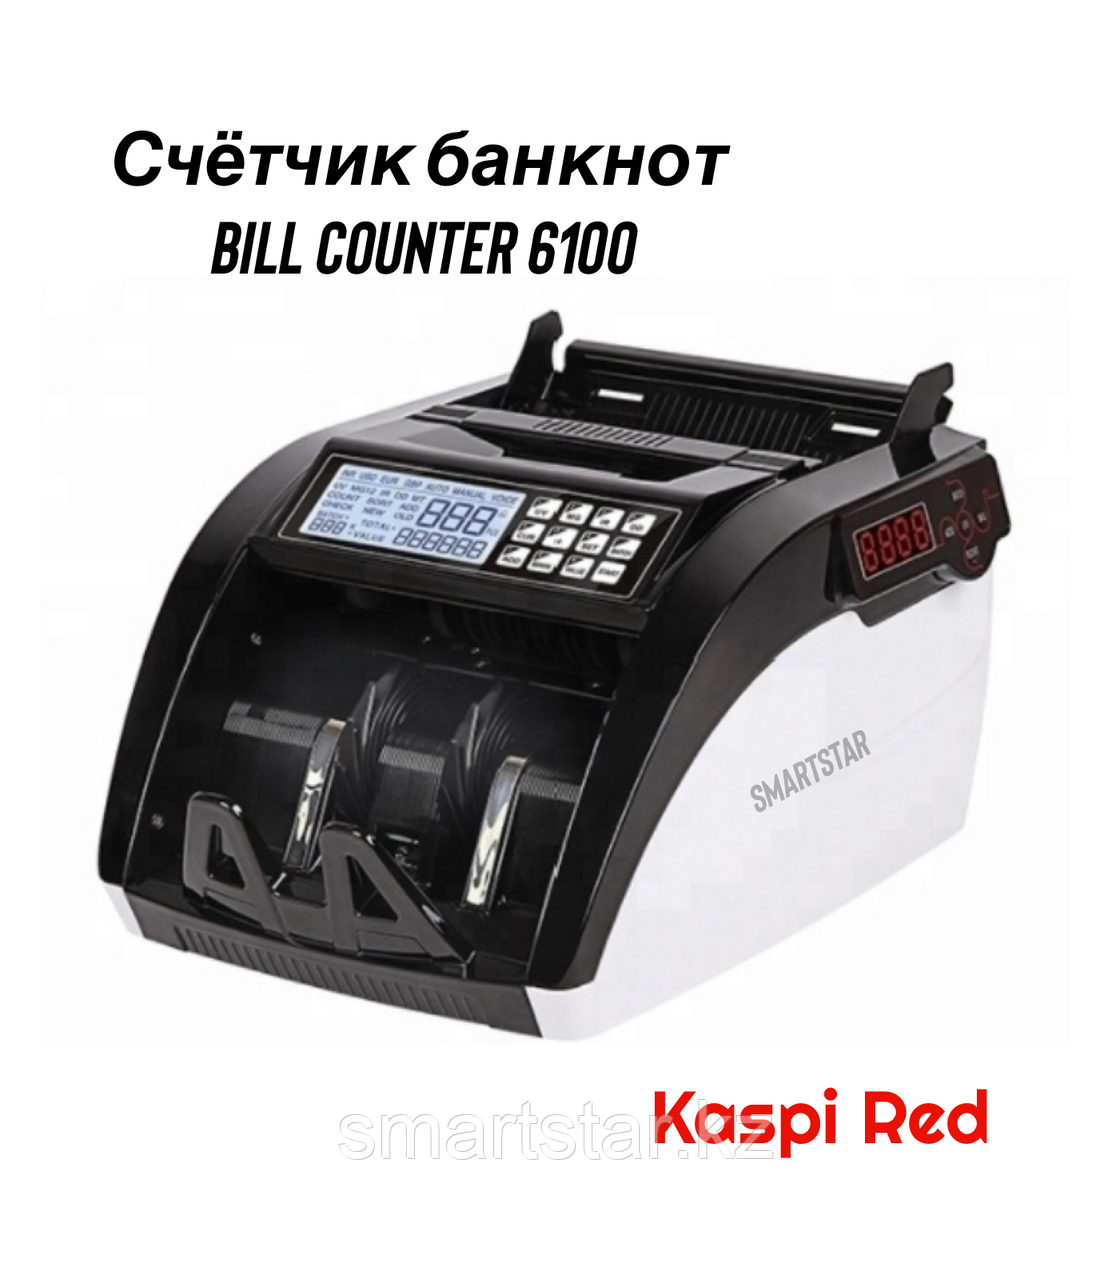 Счетная машинка Bill counter AL-6100 с детектором валют УФ MG